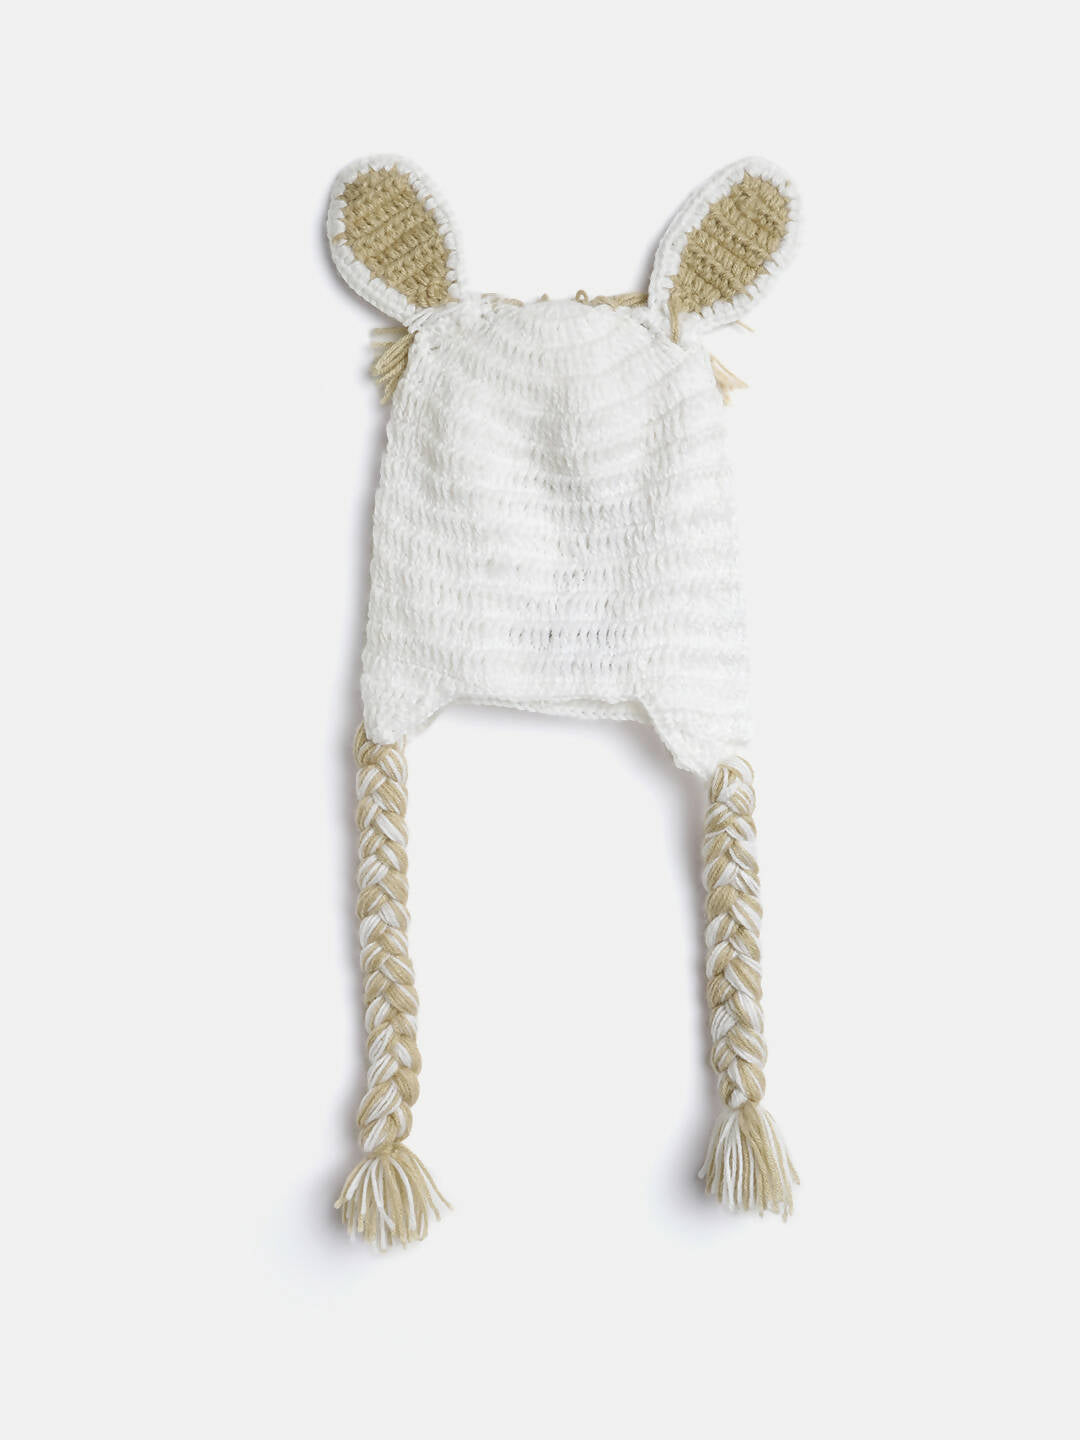 Chutput Kids Woollen Hand Knitted Llama Detail Cap - White - Distacart